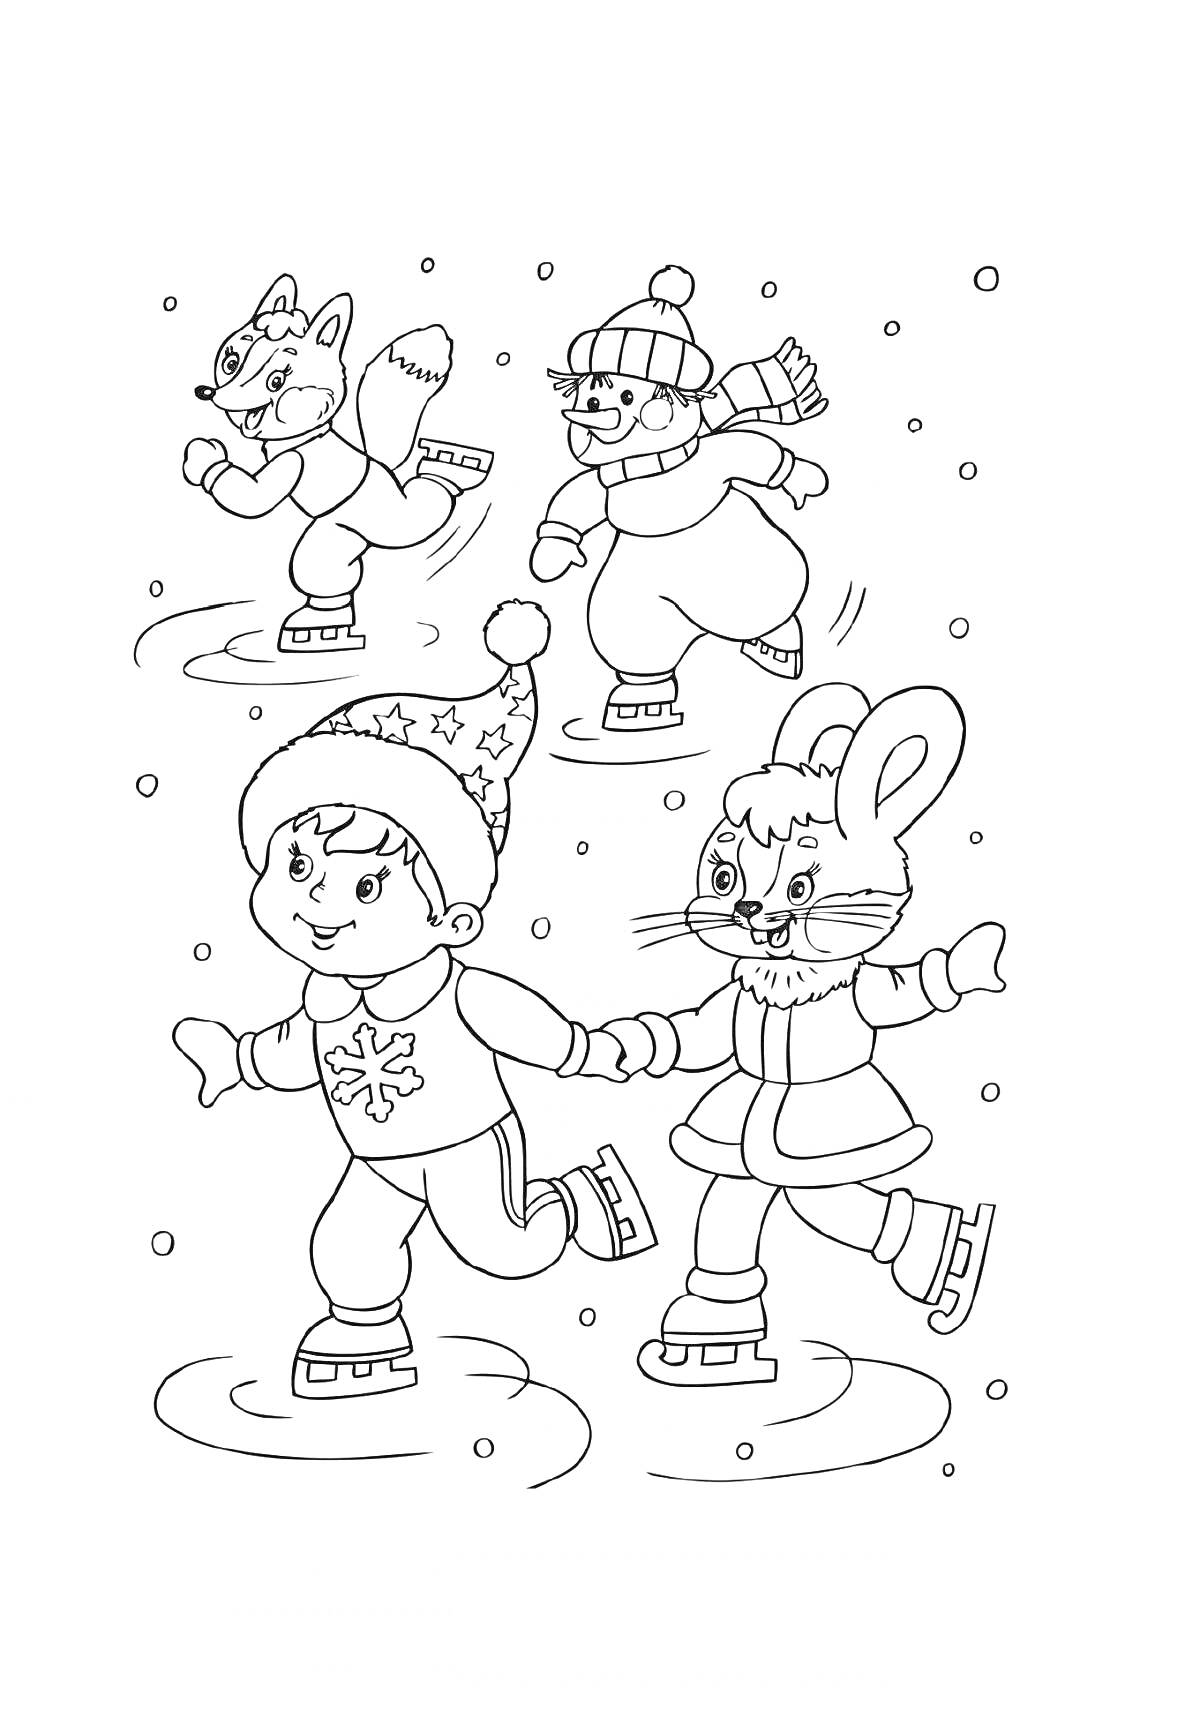 Дети и животные катаются на коньках зимой